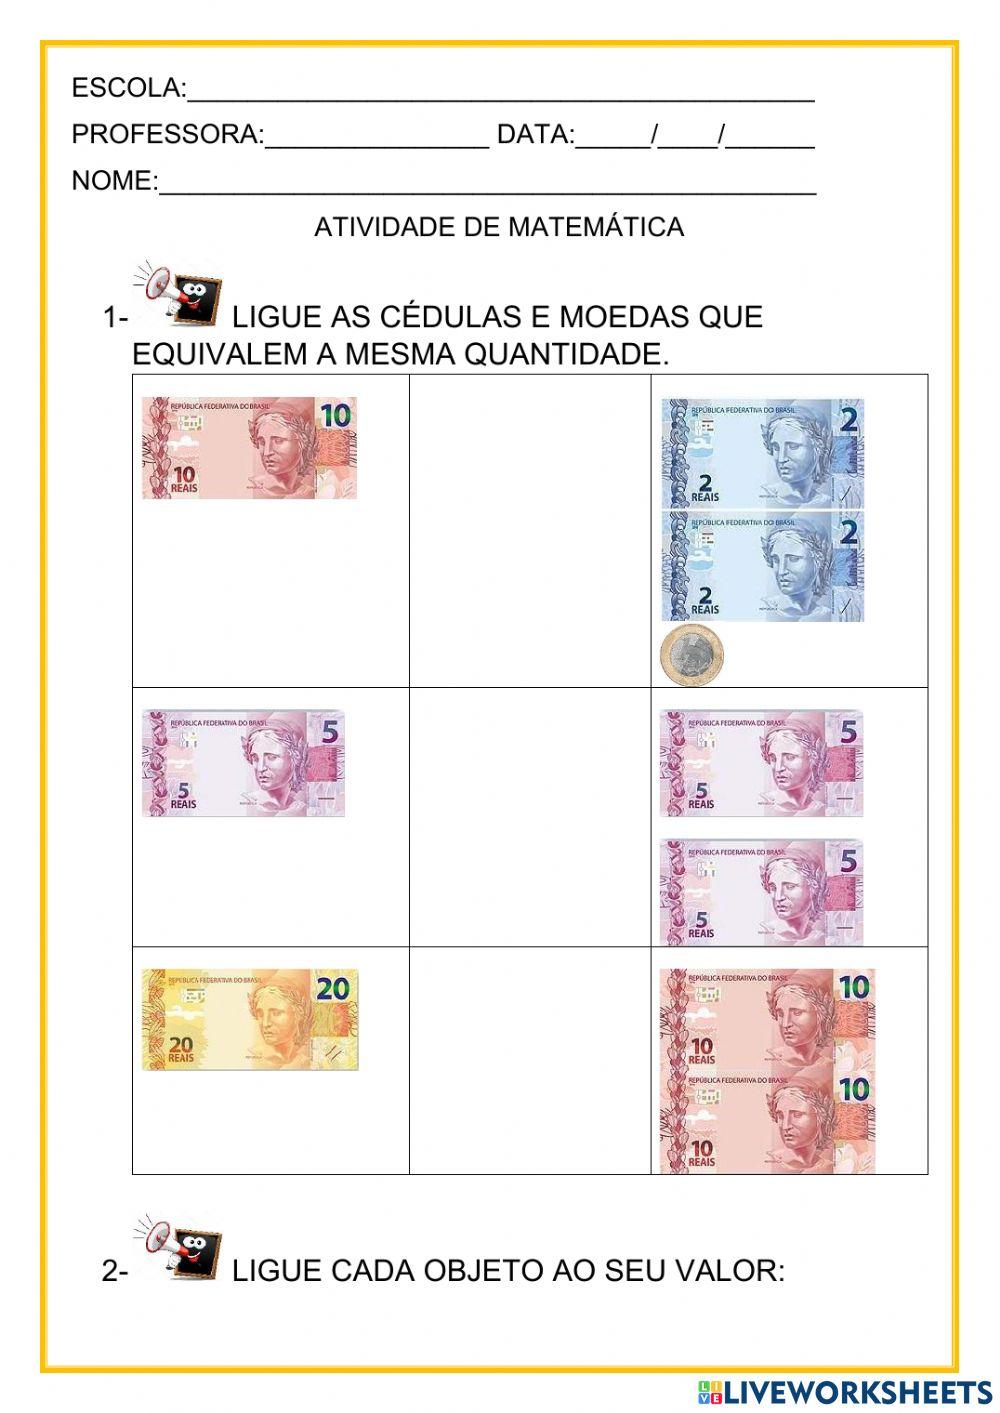 Sistema monetário brasileiro